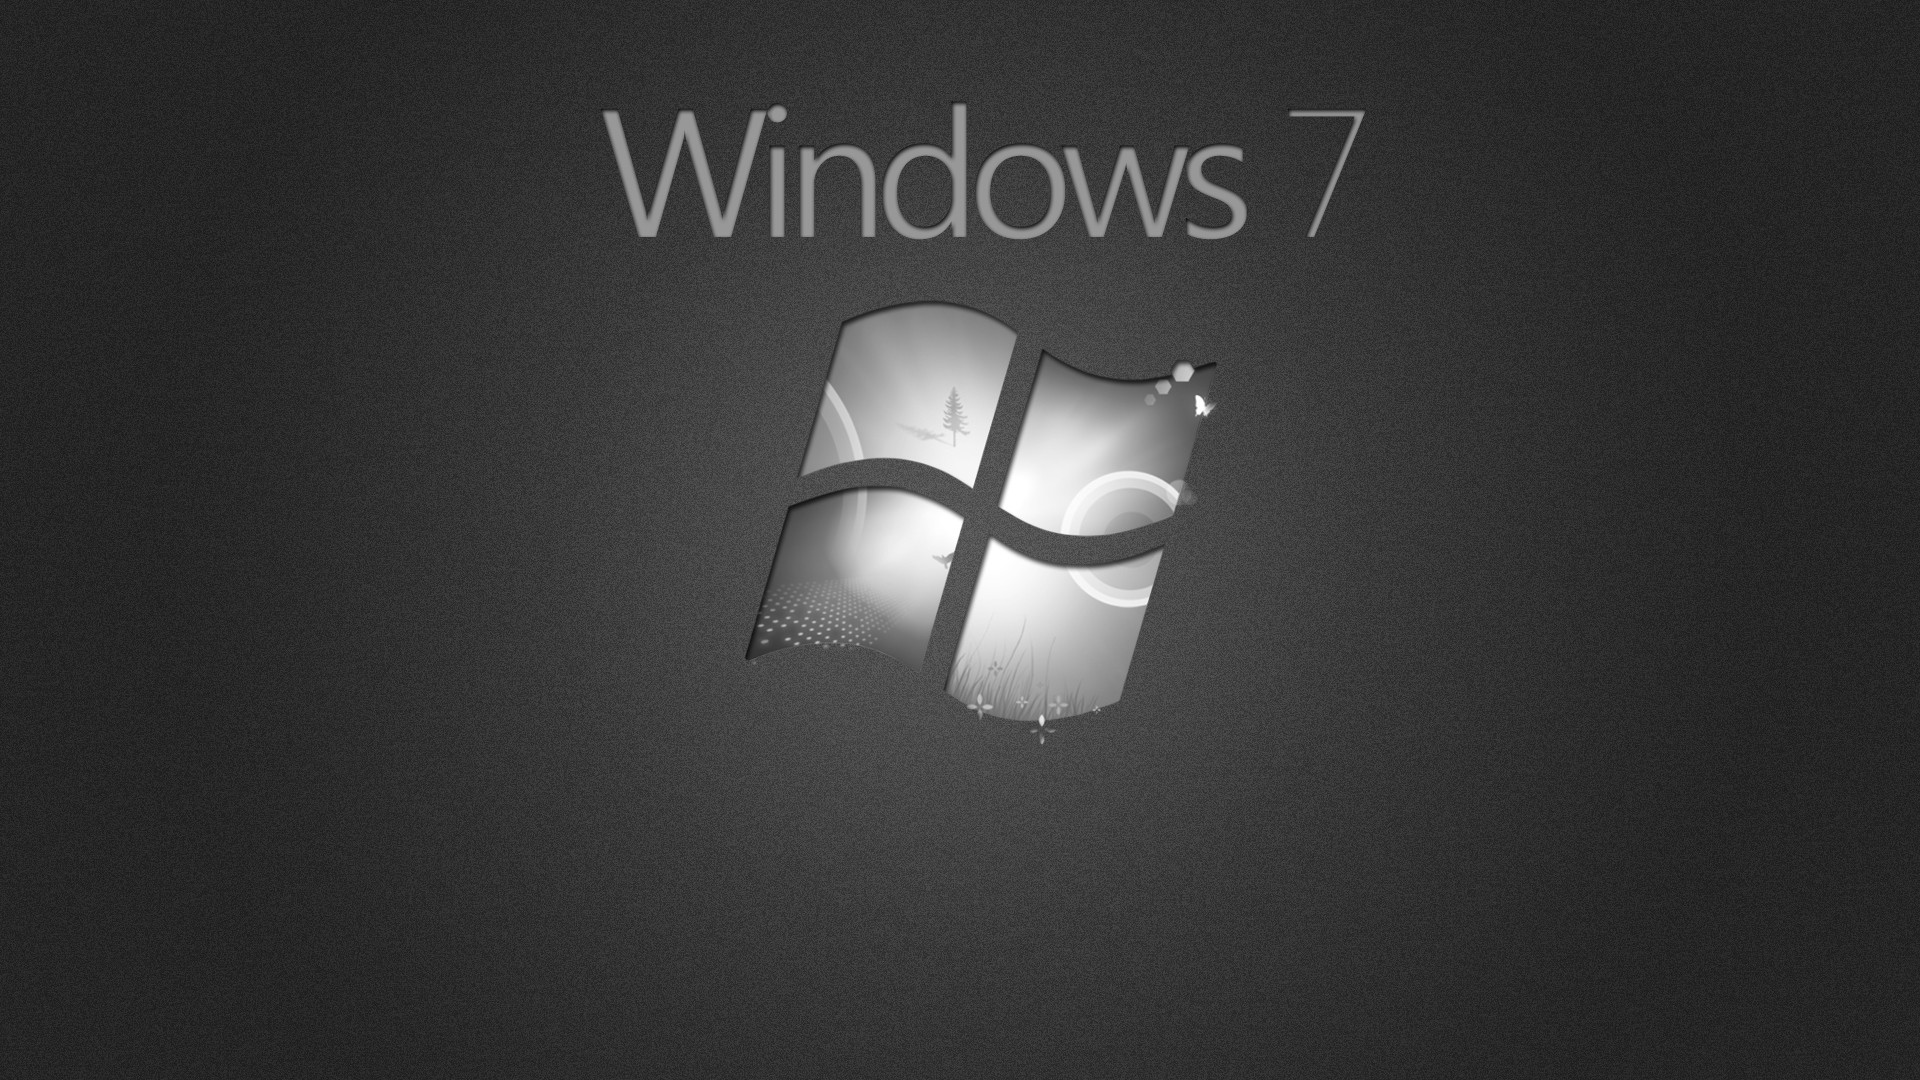 Обои в стиле Windows 7